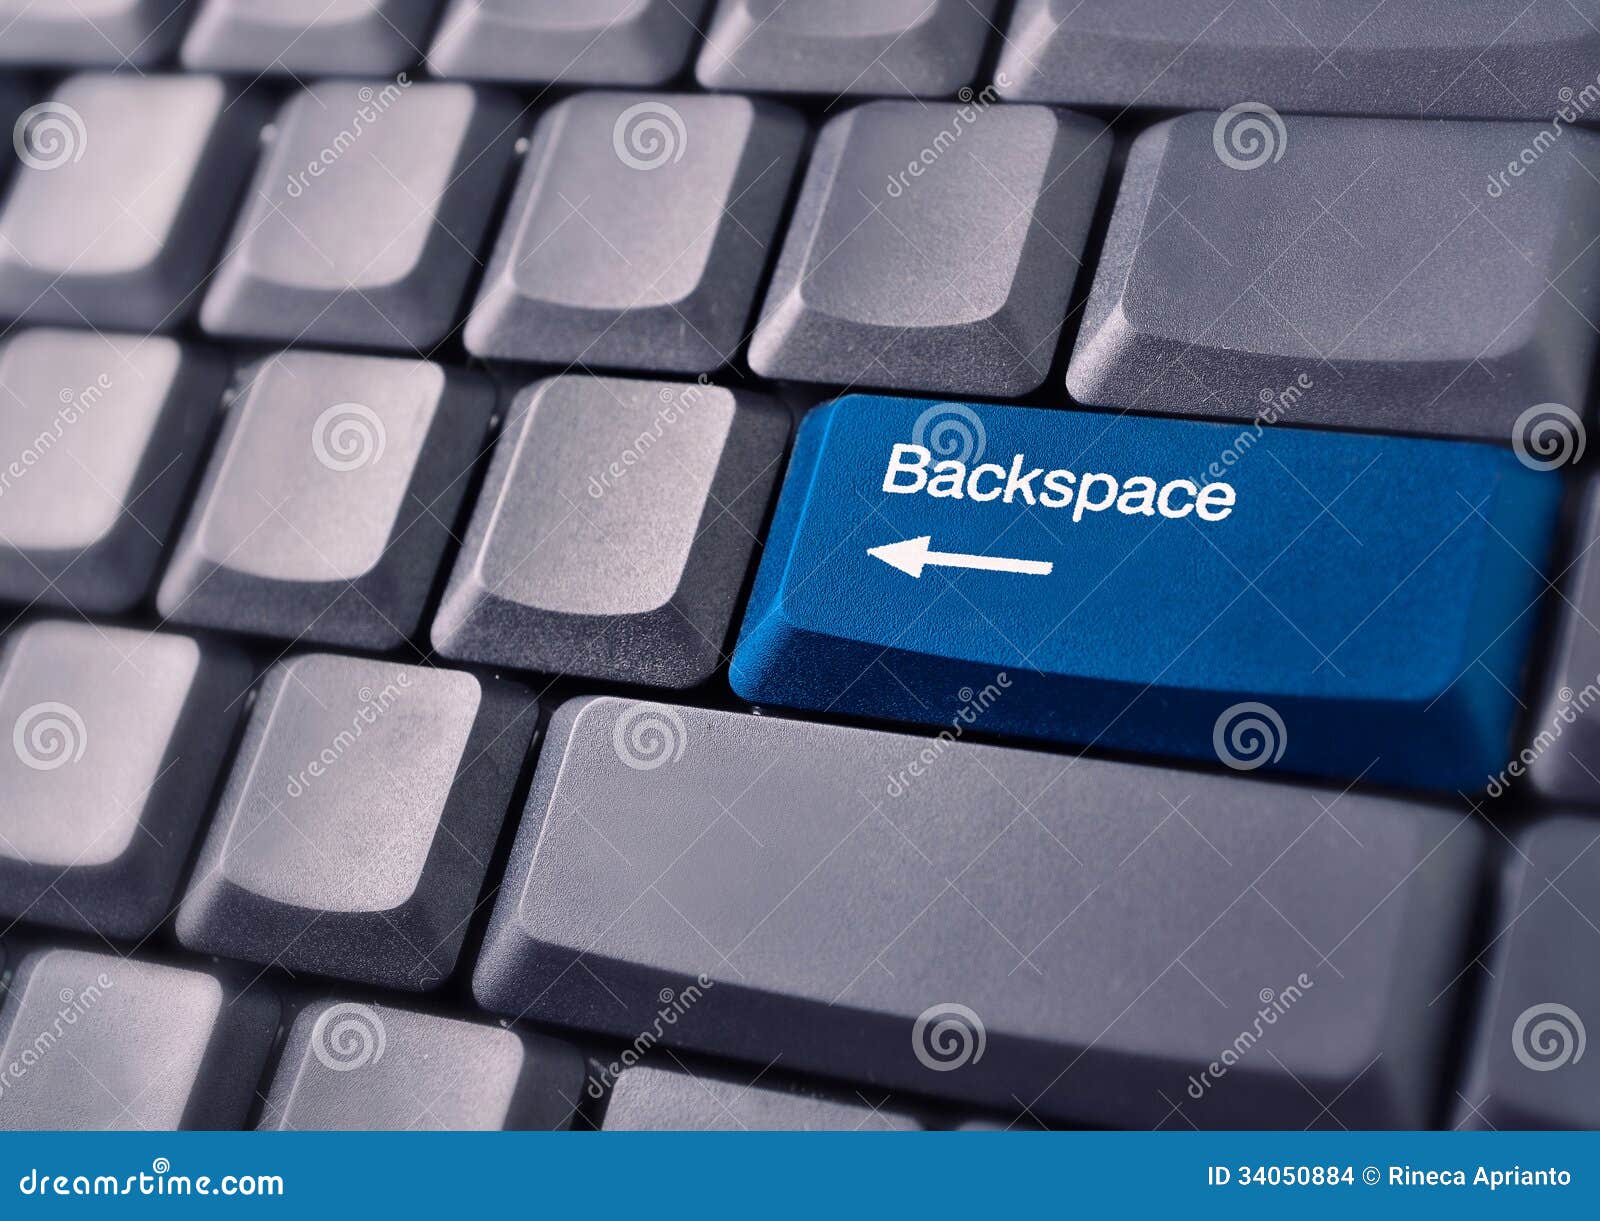 Shift backspace